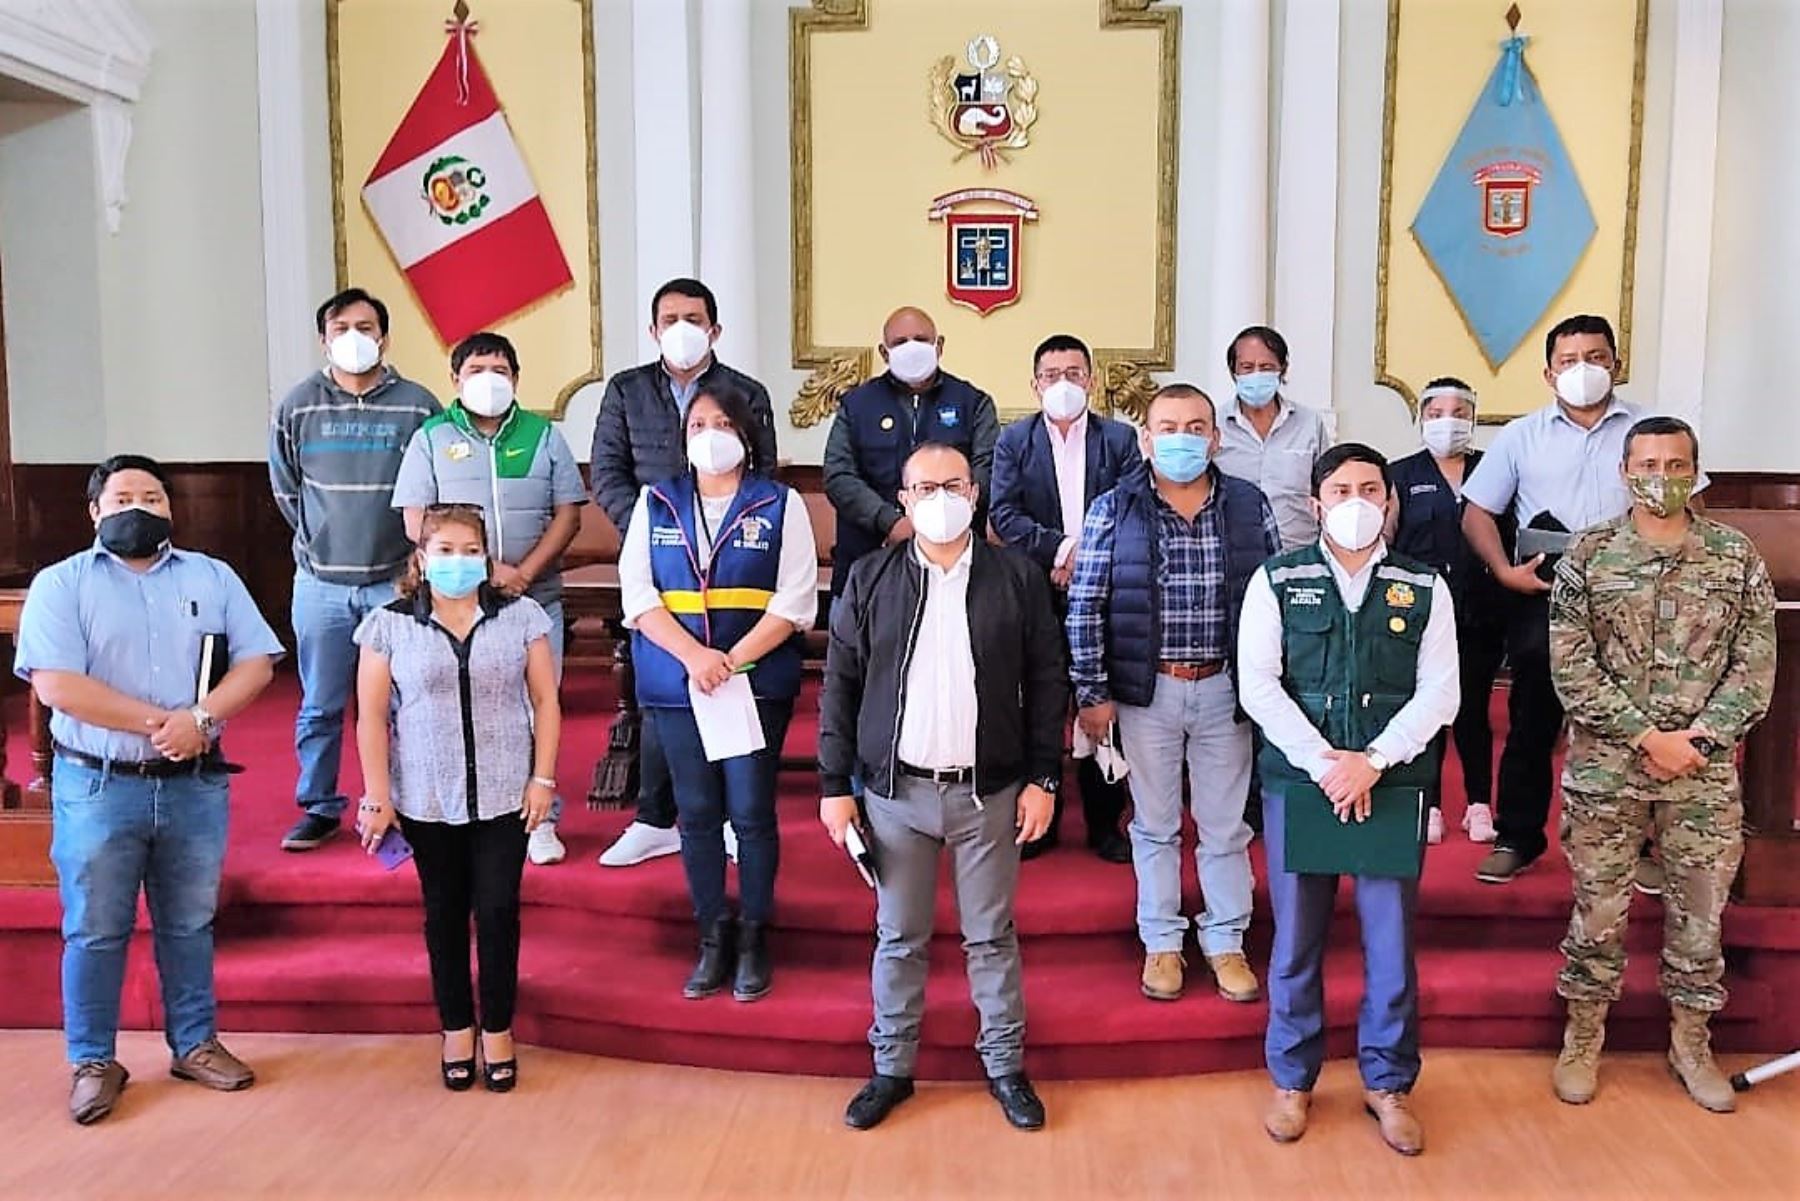 Burgomaestre provincial y alcaldes distritales de Chiclayo coordinan intervenciones articuladas para frenar contagios de covid-19. ANDINA/Difusión